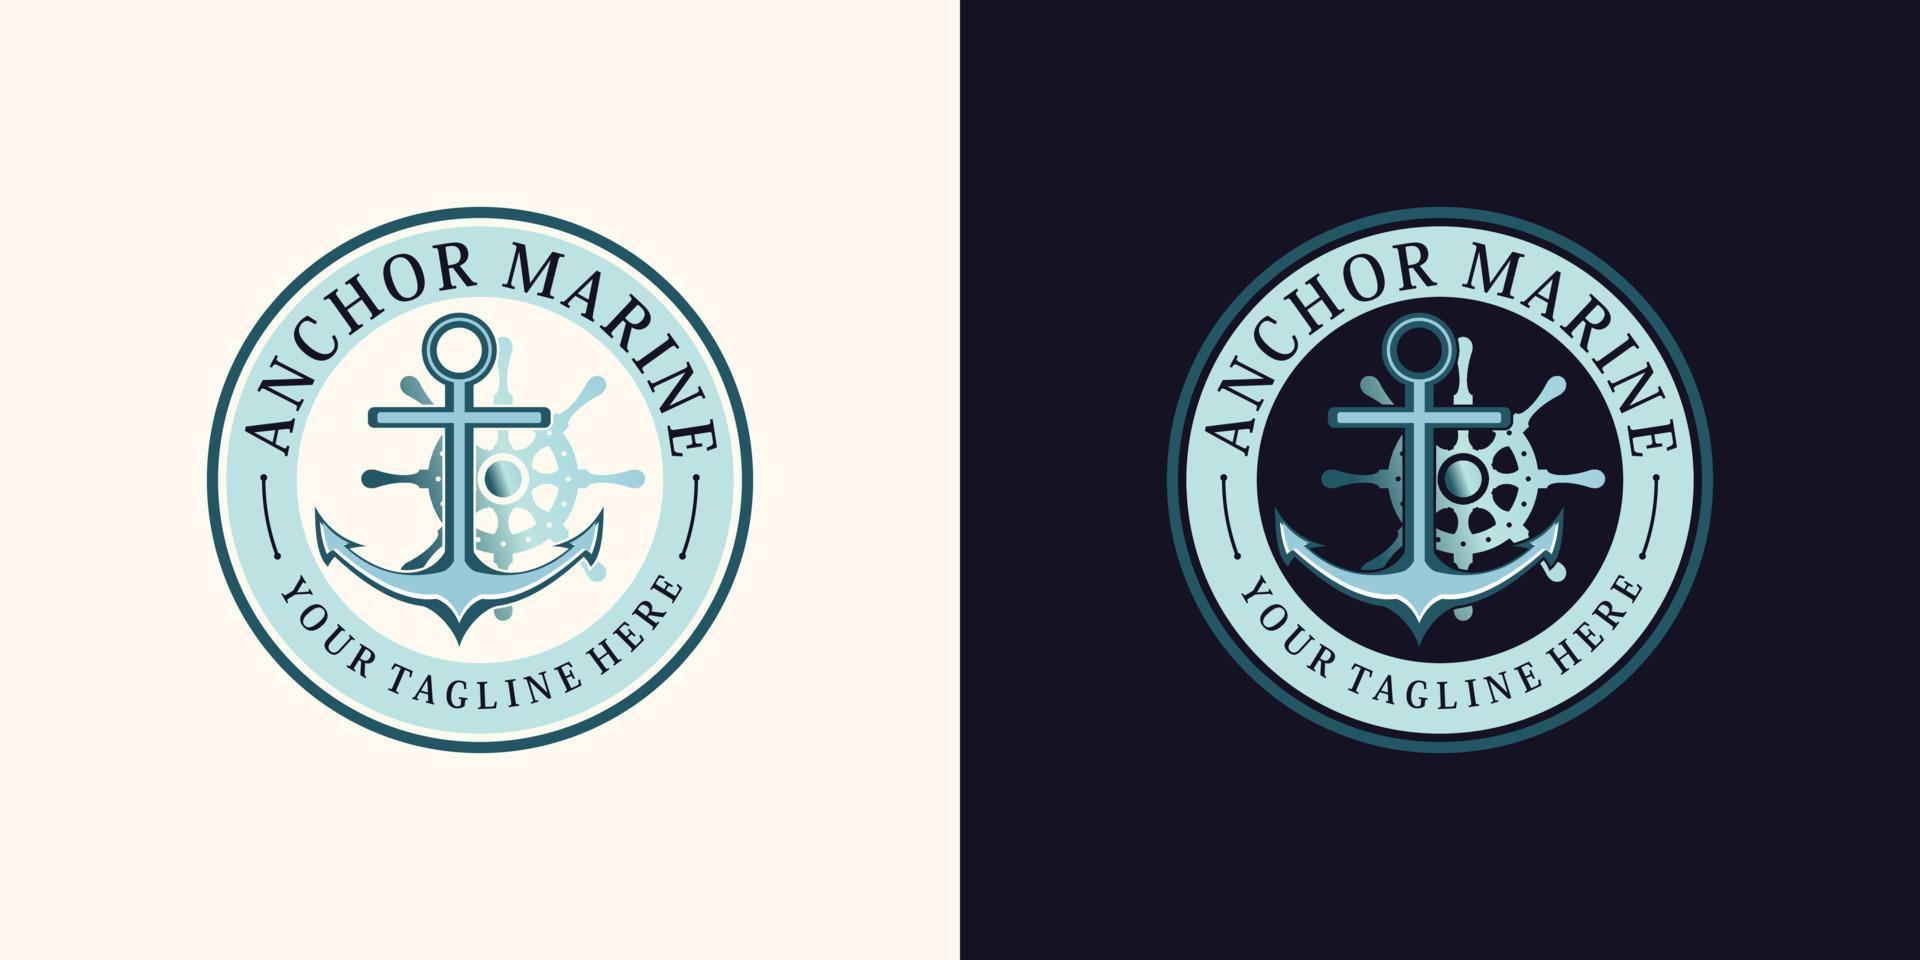 anchor logo design for sailor icon with creative concept Premium Vector